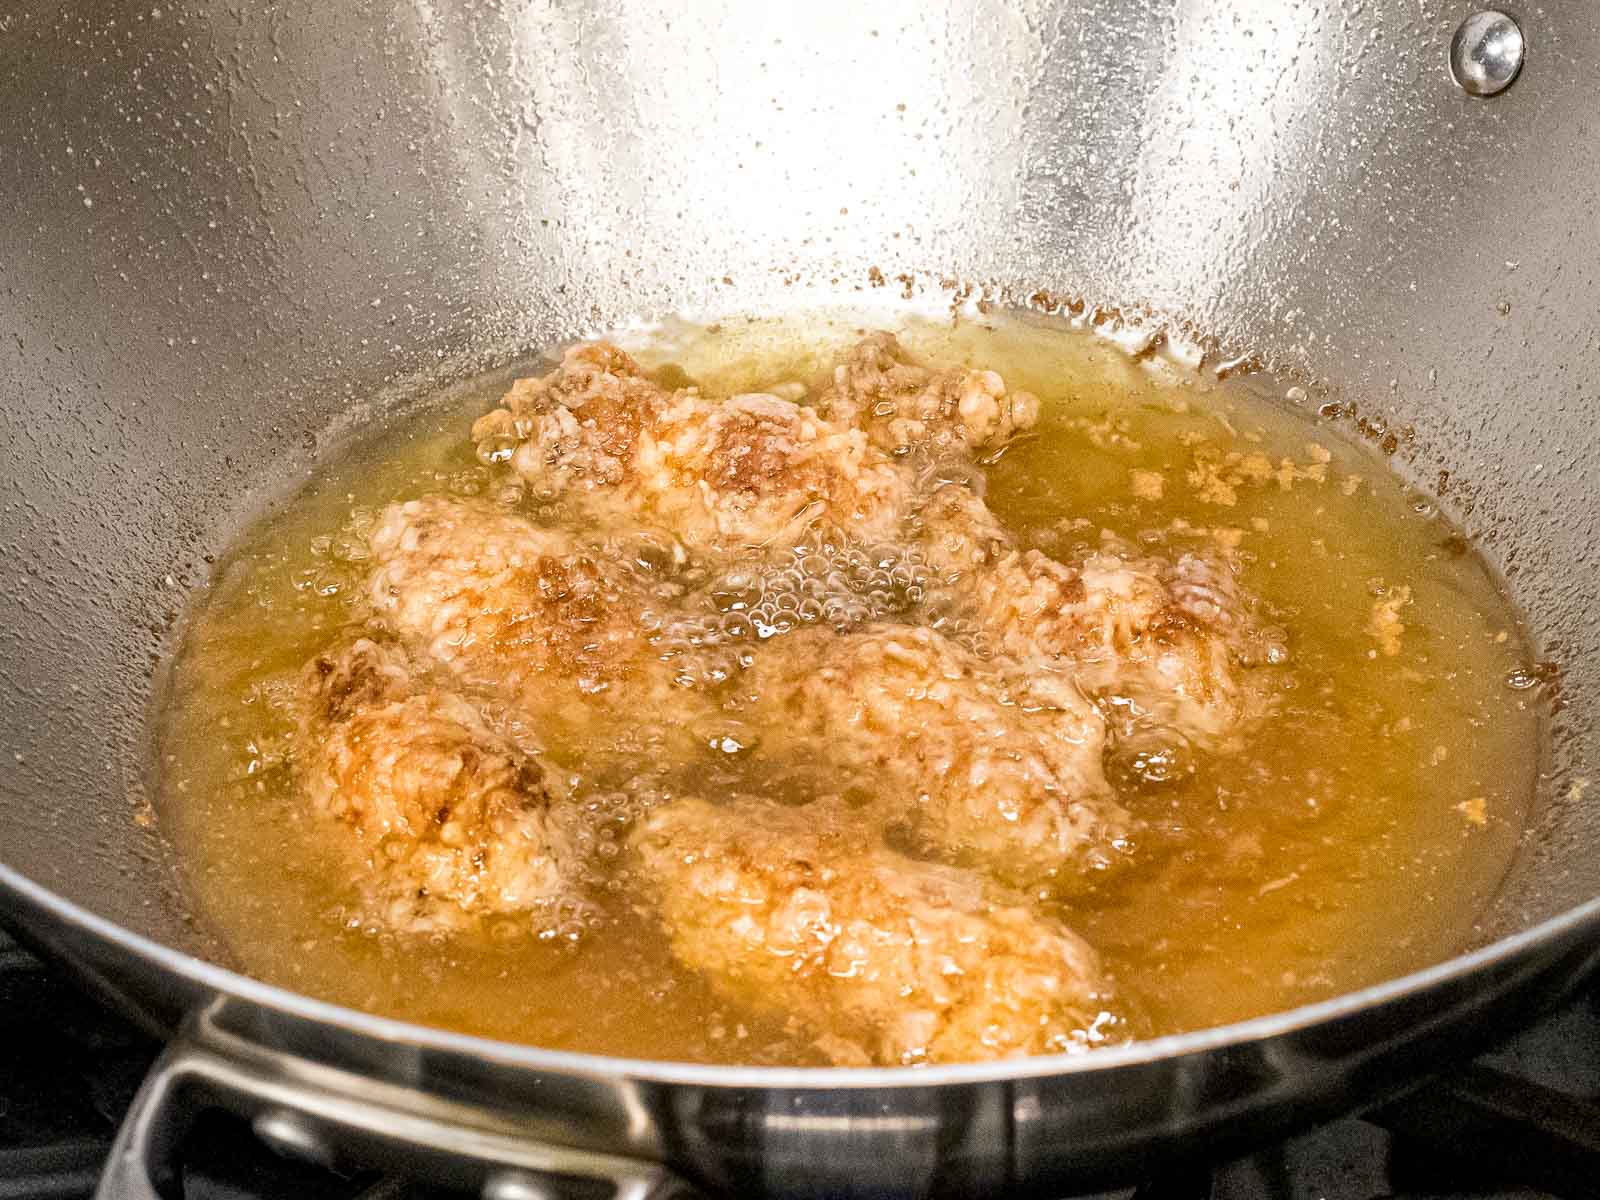 battered chicken wings double frying in oil in a metal wok